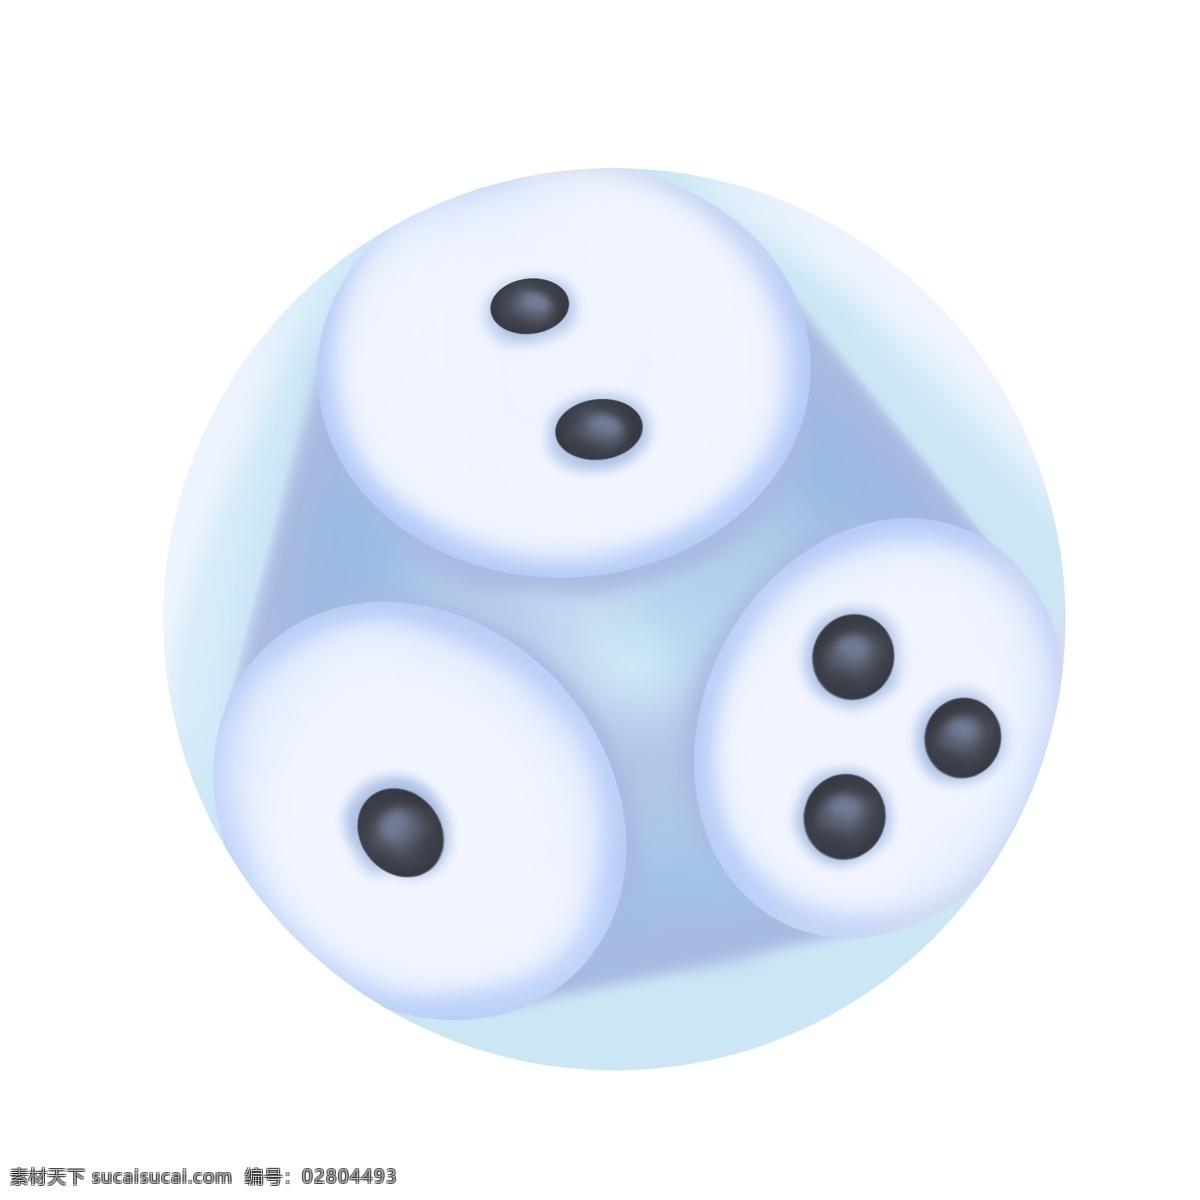 白色 圆形 骰子 插画 白色的骰子 一二三点色子 麻将游戏道具 黑色的圆点 骰子游戏 创意立体骰子